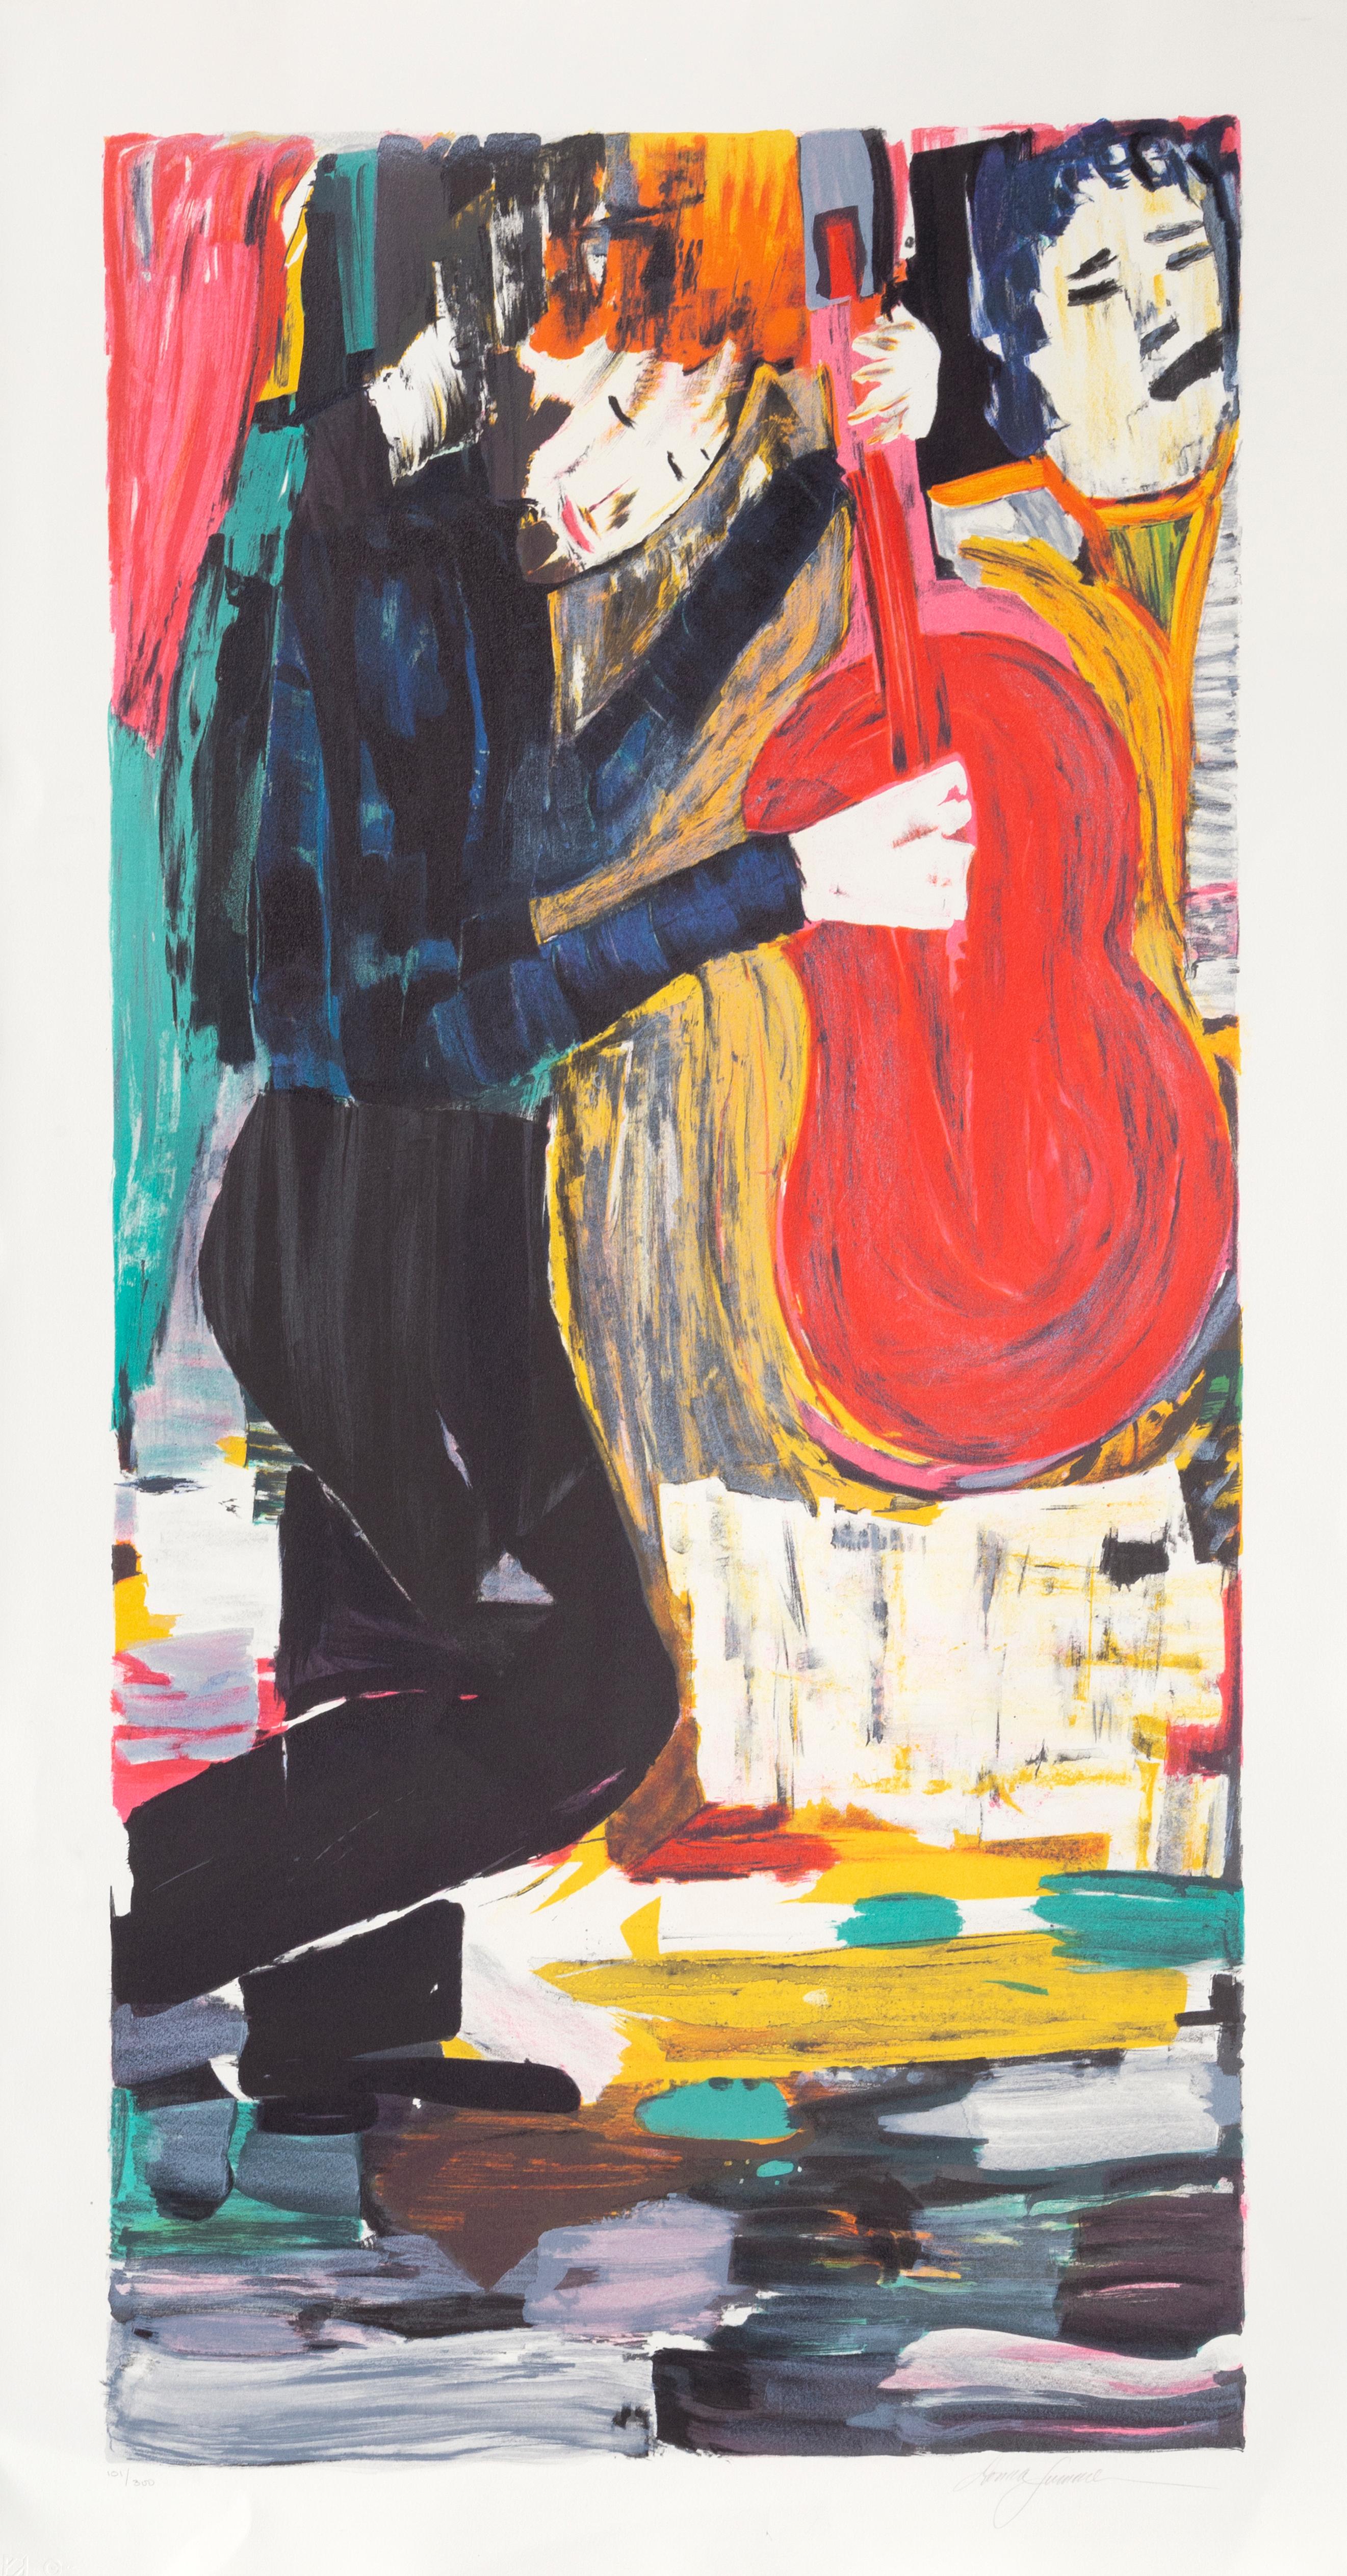 Artiste : Donna Summer, Américaine (1948 - 2012)
Titre : Jazz Man
Médium : Lithographie, signée et numérotée au crayon
Edition : 101/300
Image : 48 x 24 pouces
Taille : 53.5 x 29 in. (135,89 x 73,66 cm)